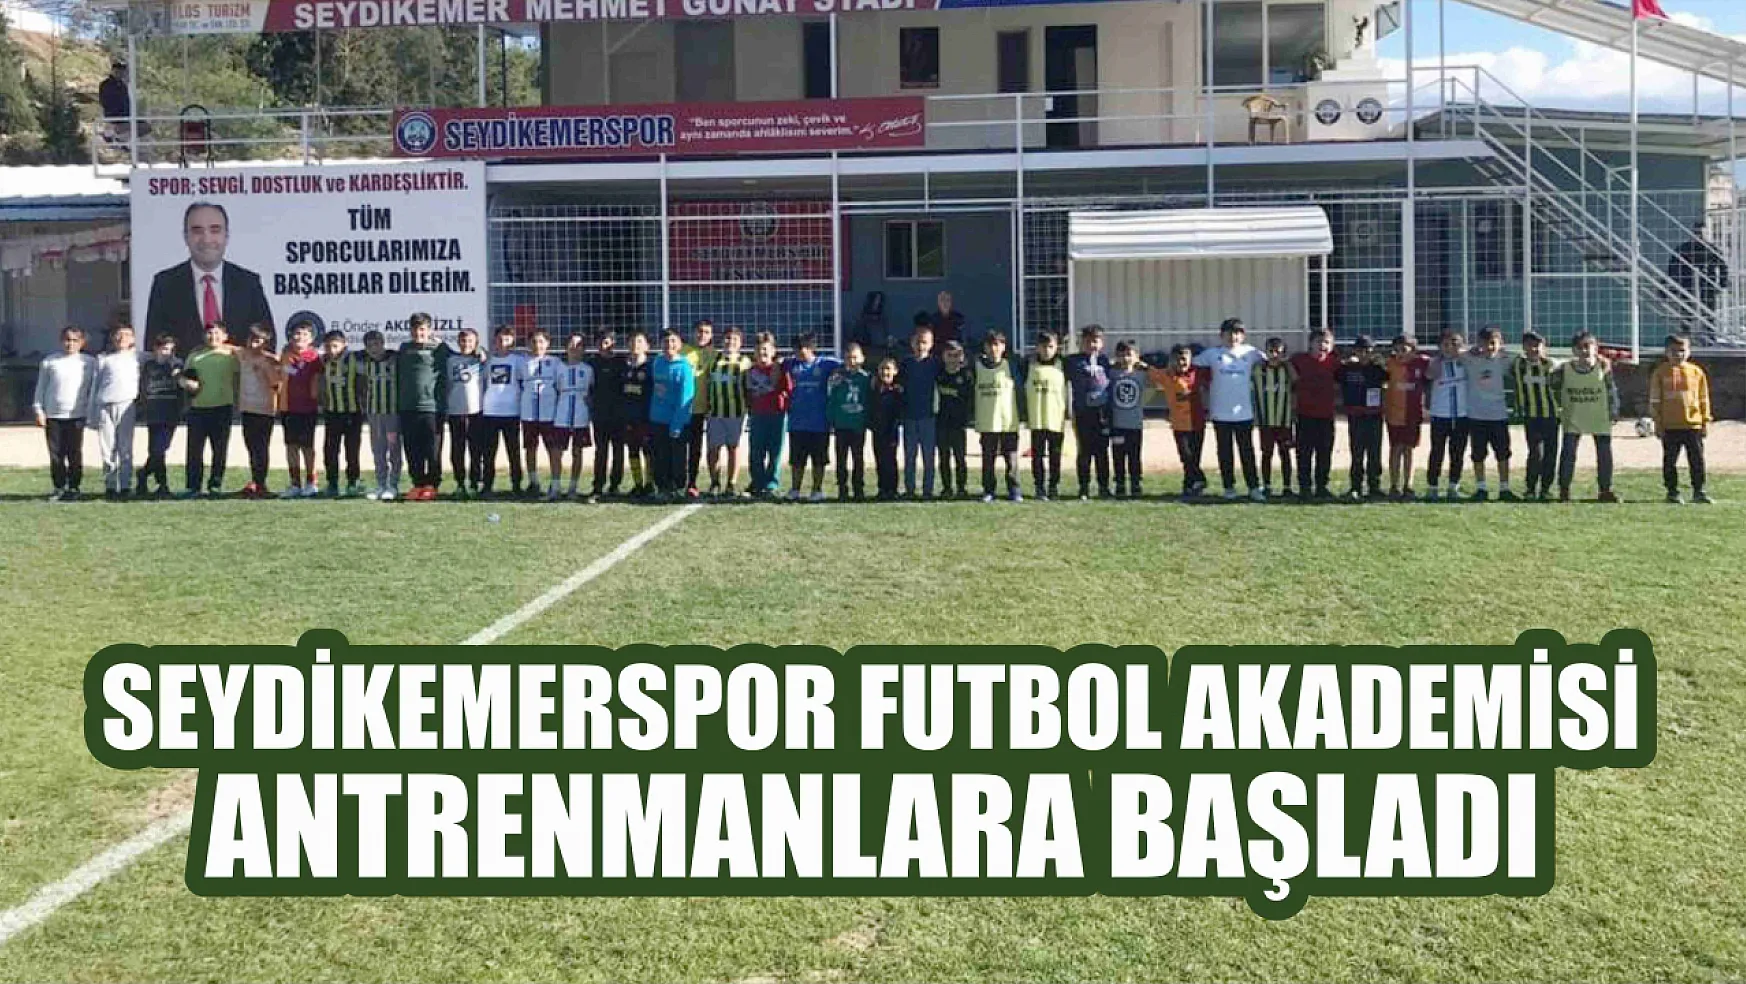 Seydikemerspor Futbol Akademisi Antrenmanlara Başladı